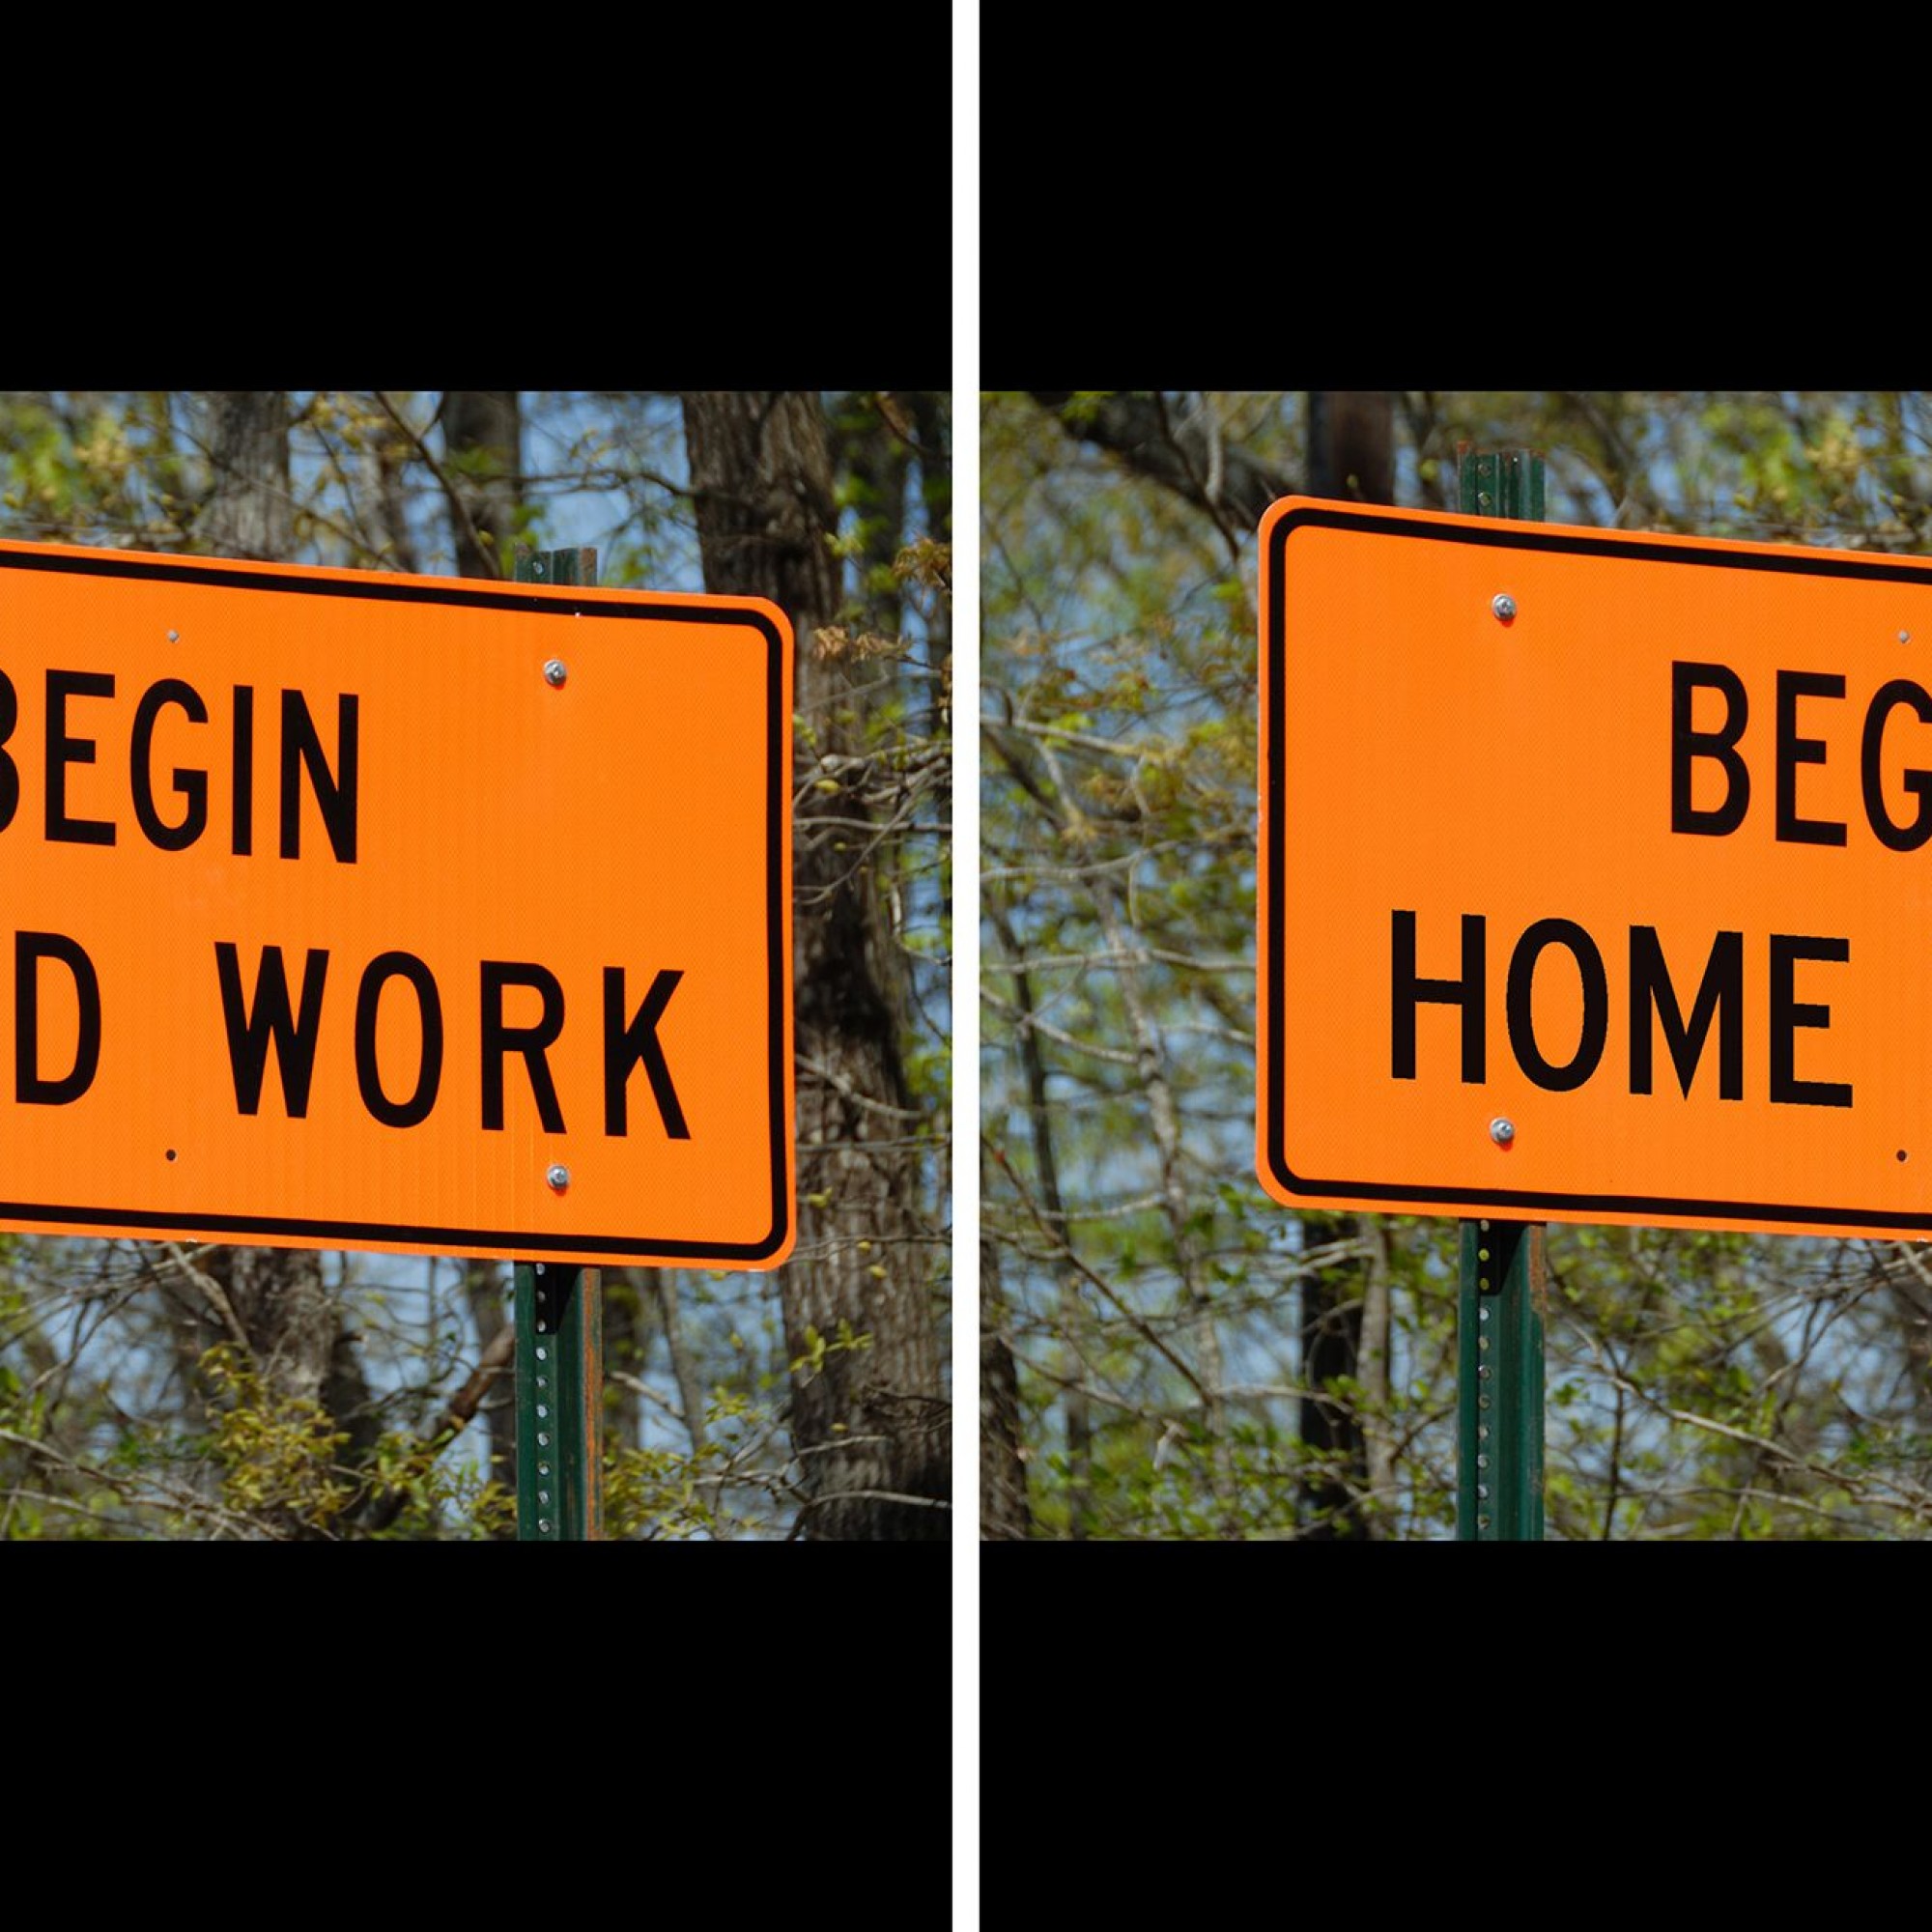 Strassentafel, einmal vor (Begin Road Work) und einmal während der Coronapedemie (Begin Home Work).